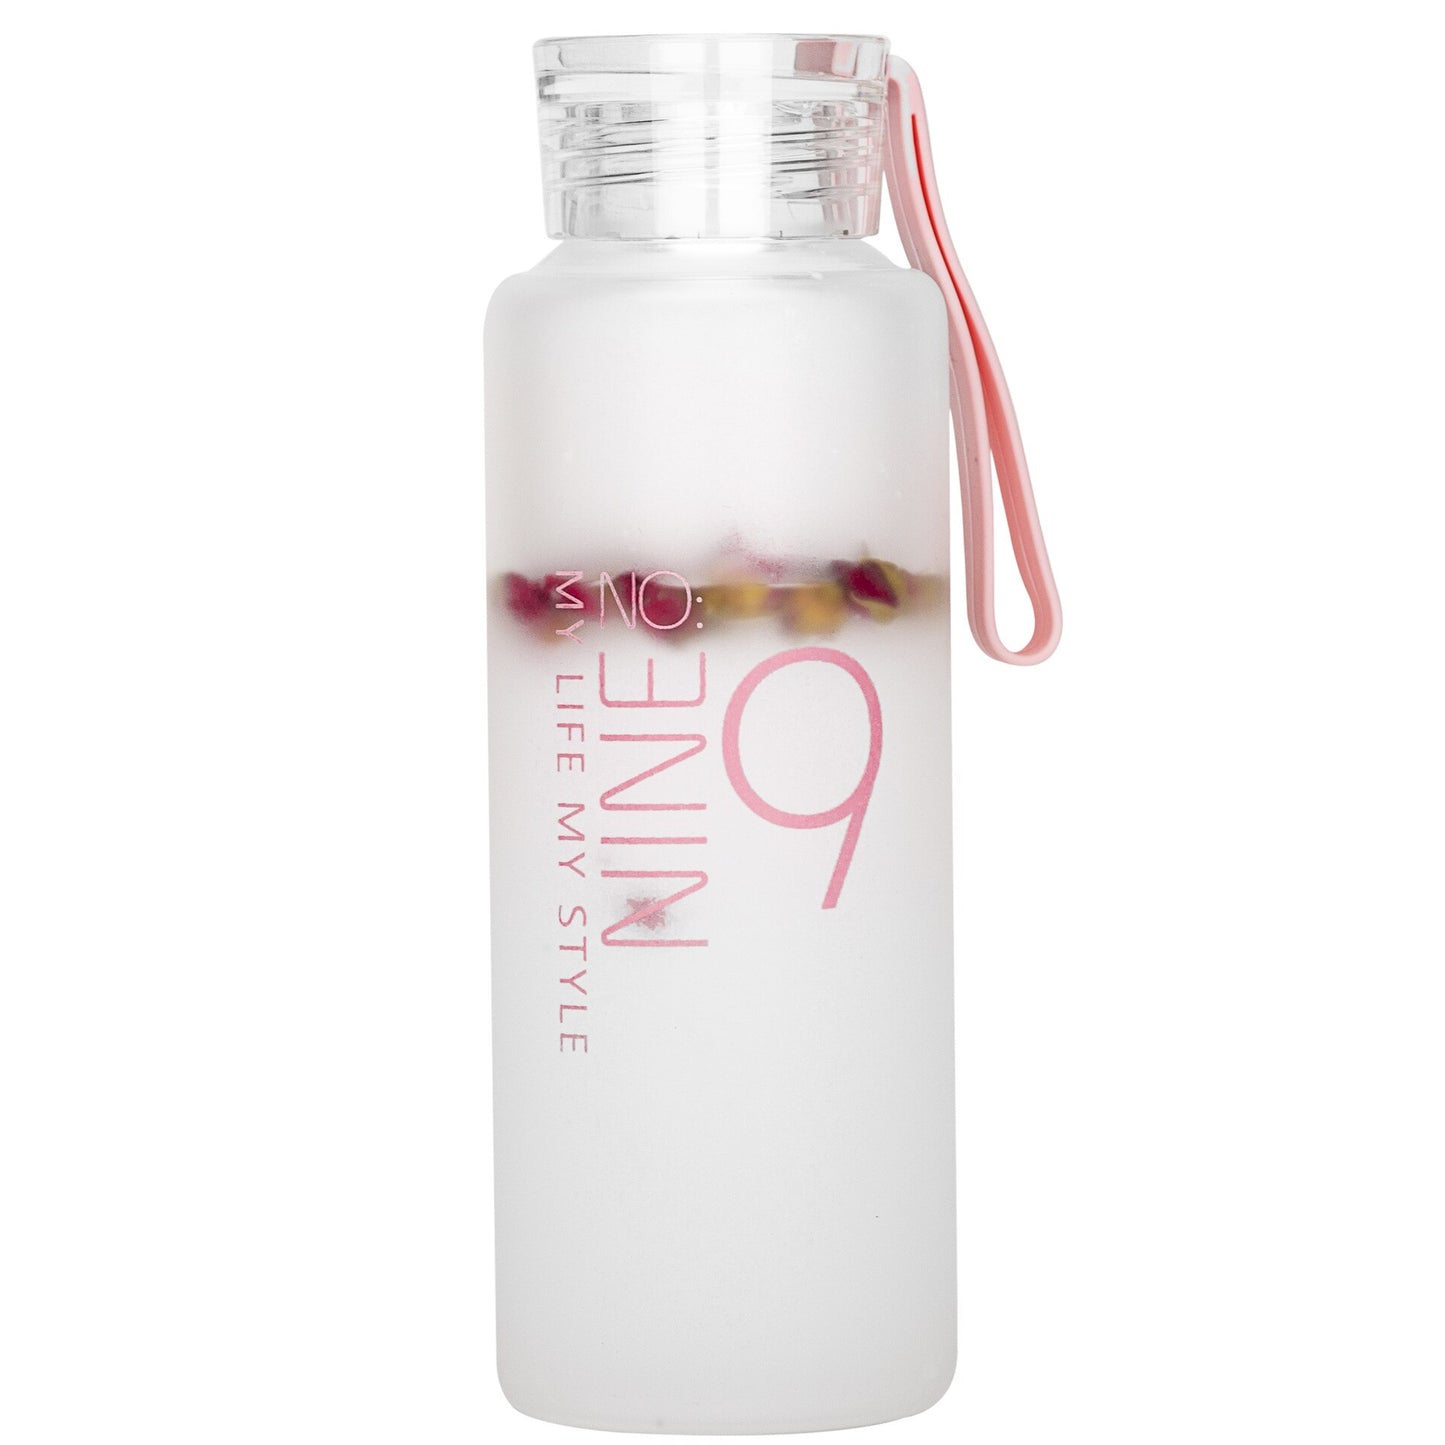 Eine durchsichtige matte Glastrinkflasche und einem rosafarbenen Silikonband. Die Flasche ist mit der Aufschrift "NINE 09" in einem modernen, absteigenden Schriftzug bedruckt, der von unten nach oben gelesen werden kann. Im Inneren der Flasche sind unscharf Fruchtstuecke zu erkennen.